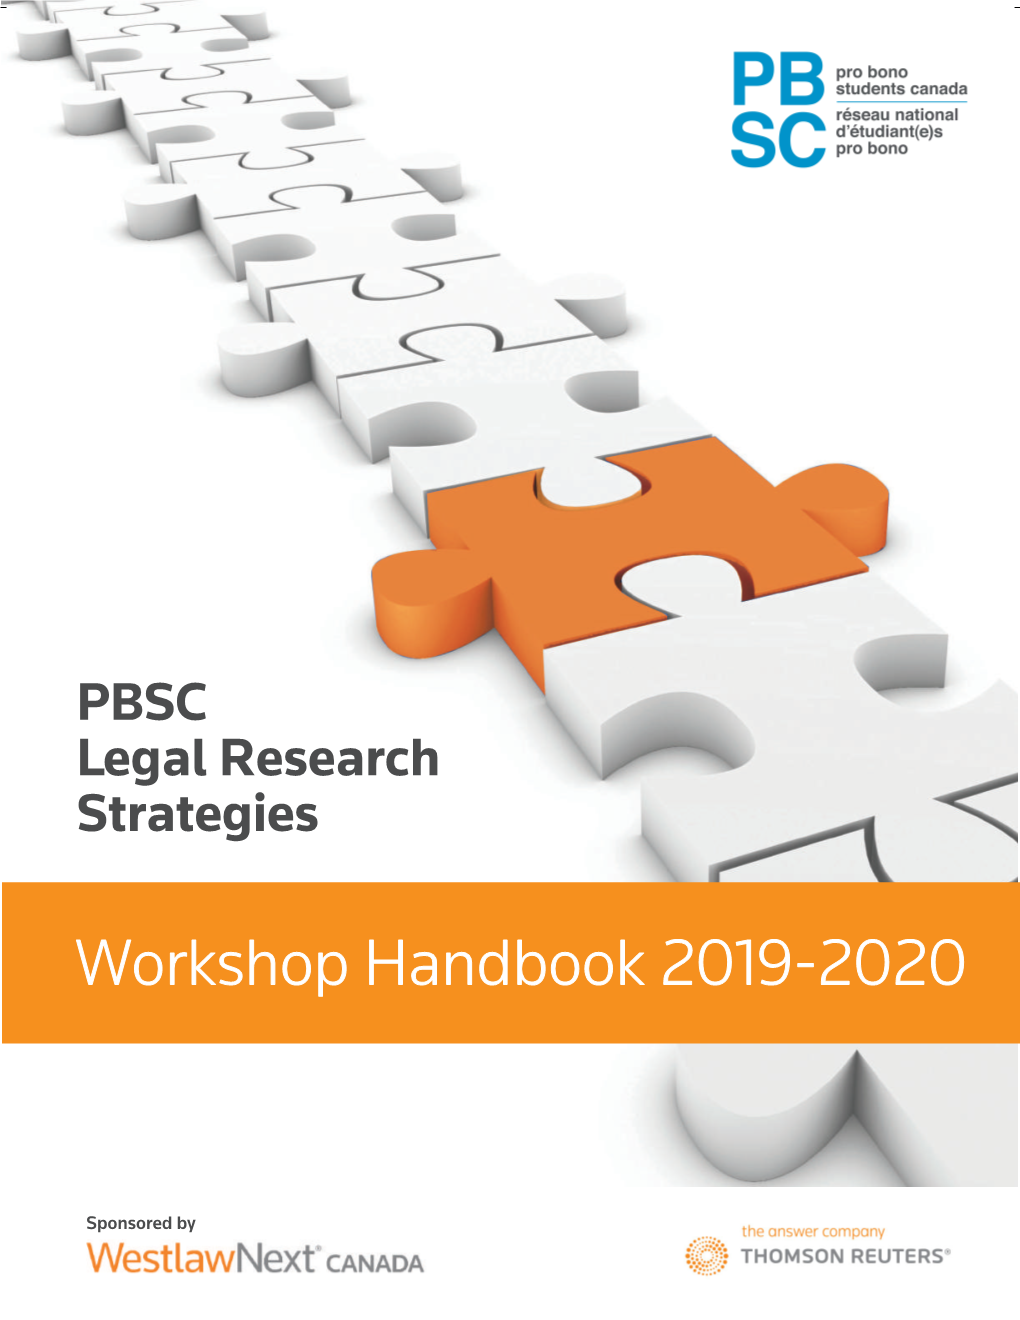 Workshop Handbook 2019-2020